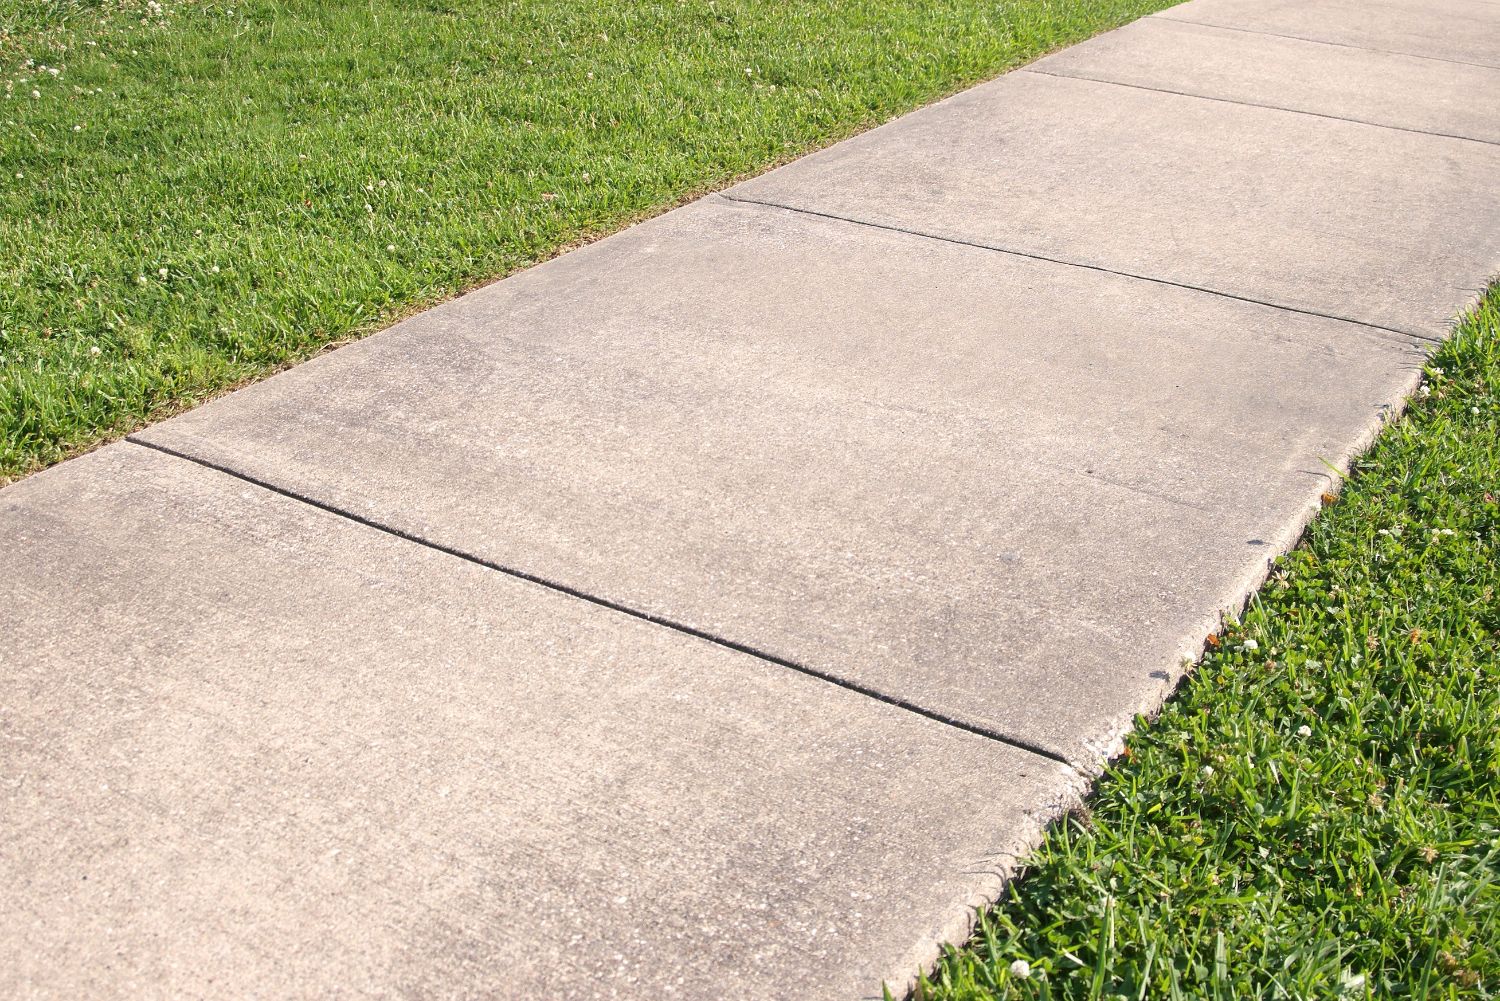 An image of a sidewalk next to grass